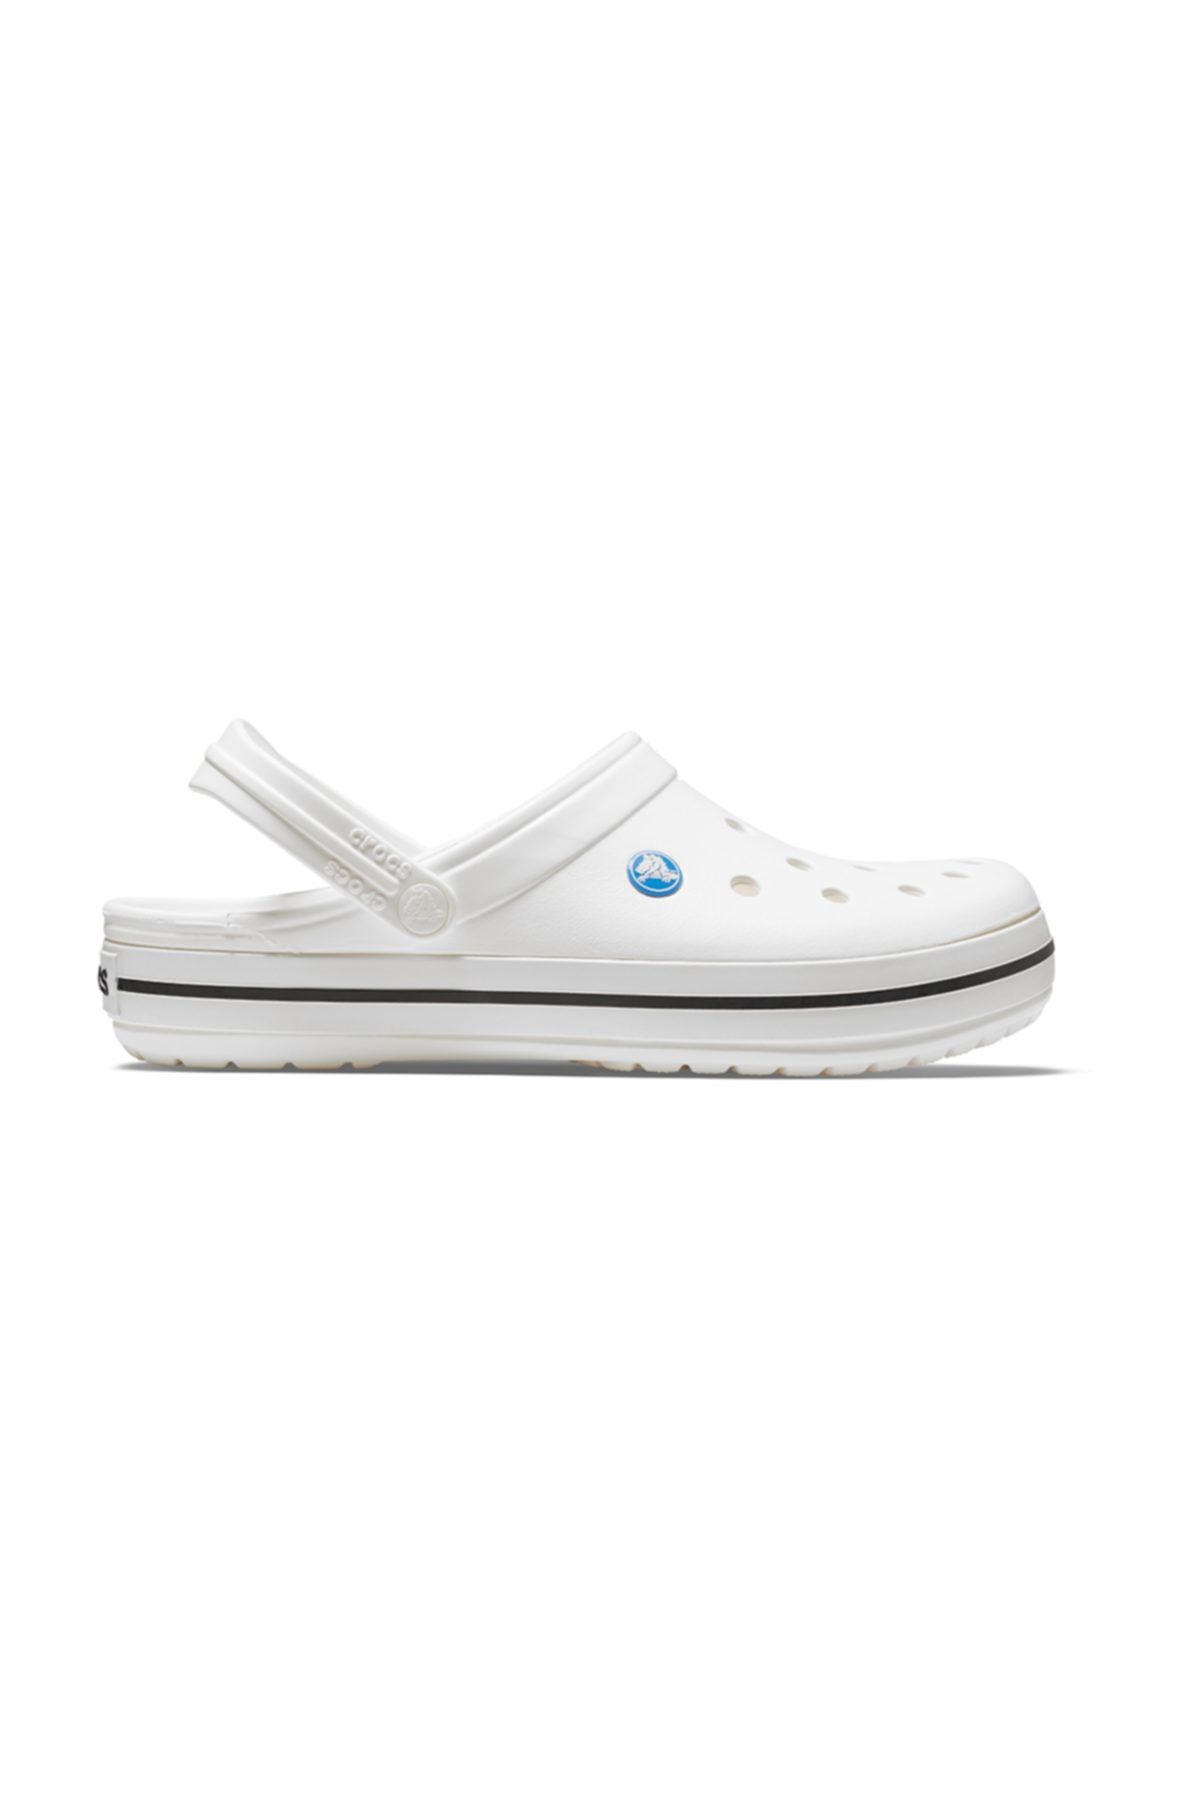 Crocs 11016-11ı Crocband Unısex Sandalet Terlik